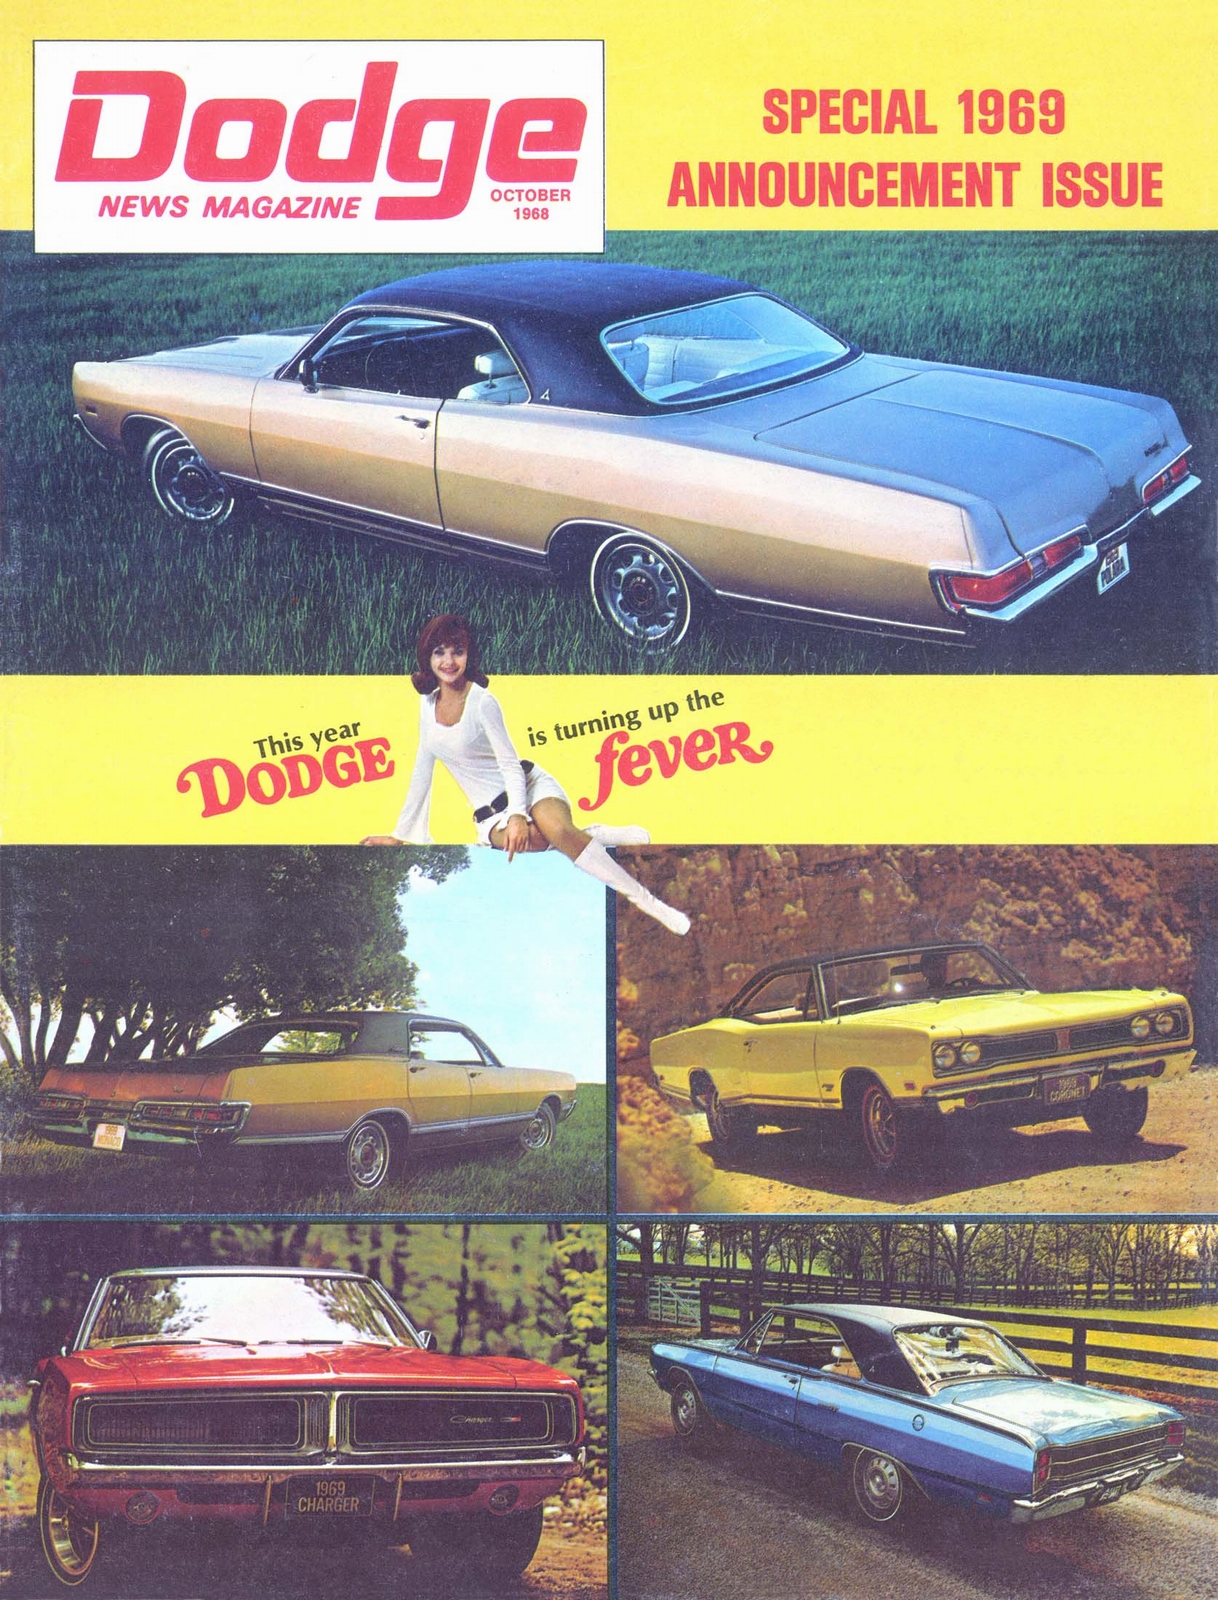 n_1969 Dodge Announcement-01.jpg